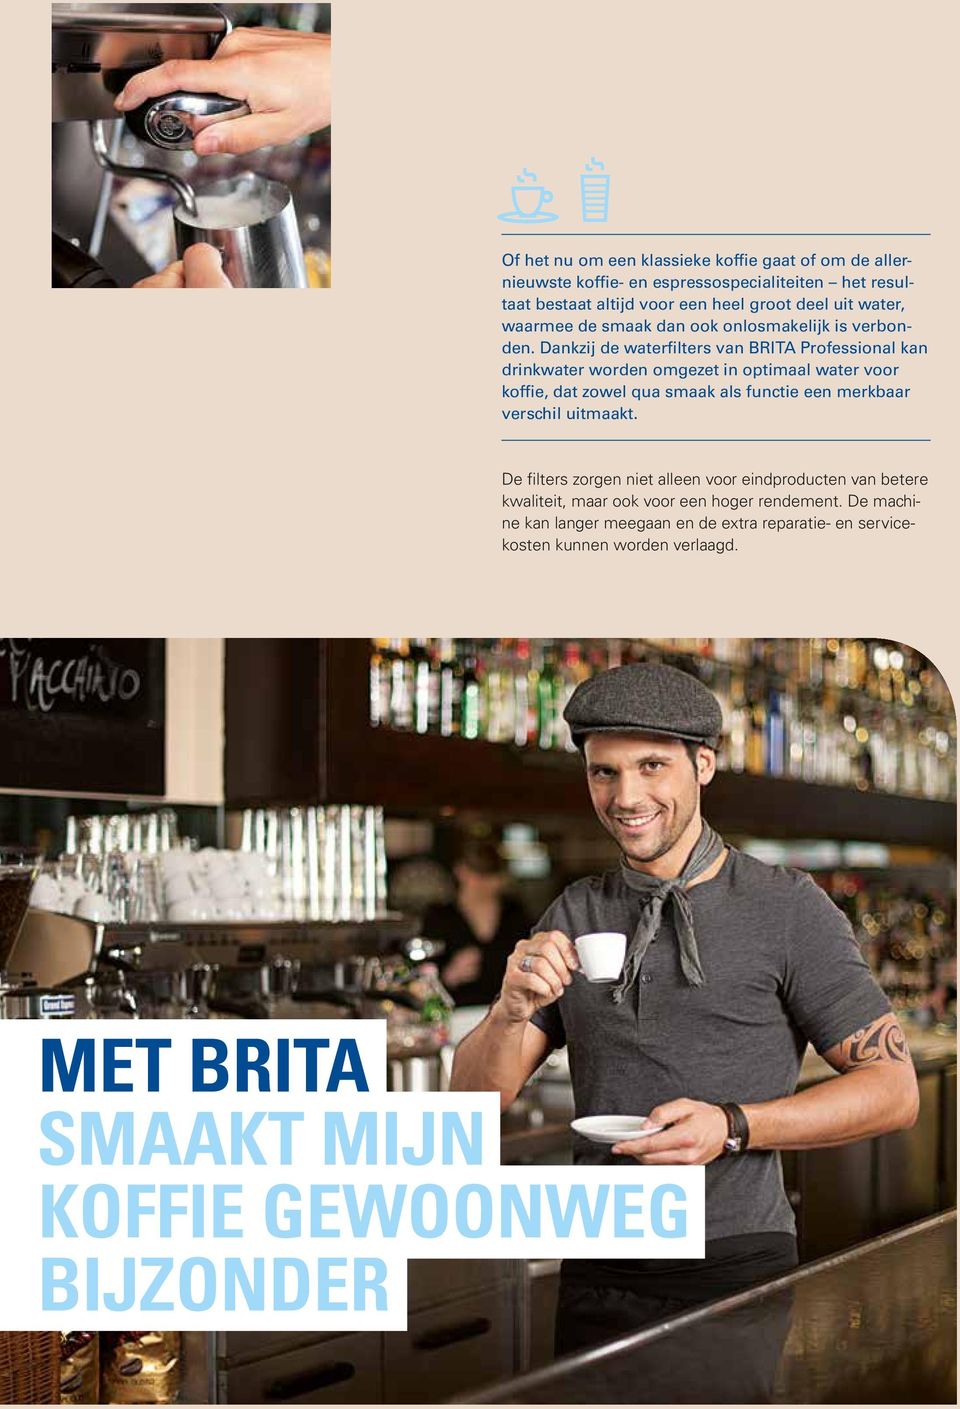 Dankzij de waterfilters van BRITA Professional kan drinkwater worden omgezet in optimaal water voor koffie, dat zowel qua smaak als functie een merkbaar